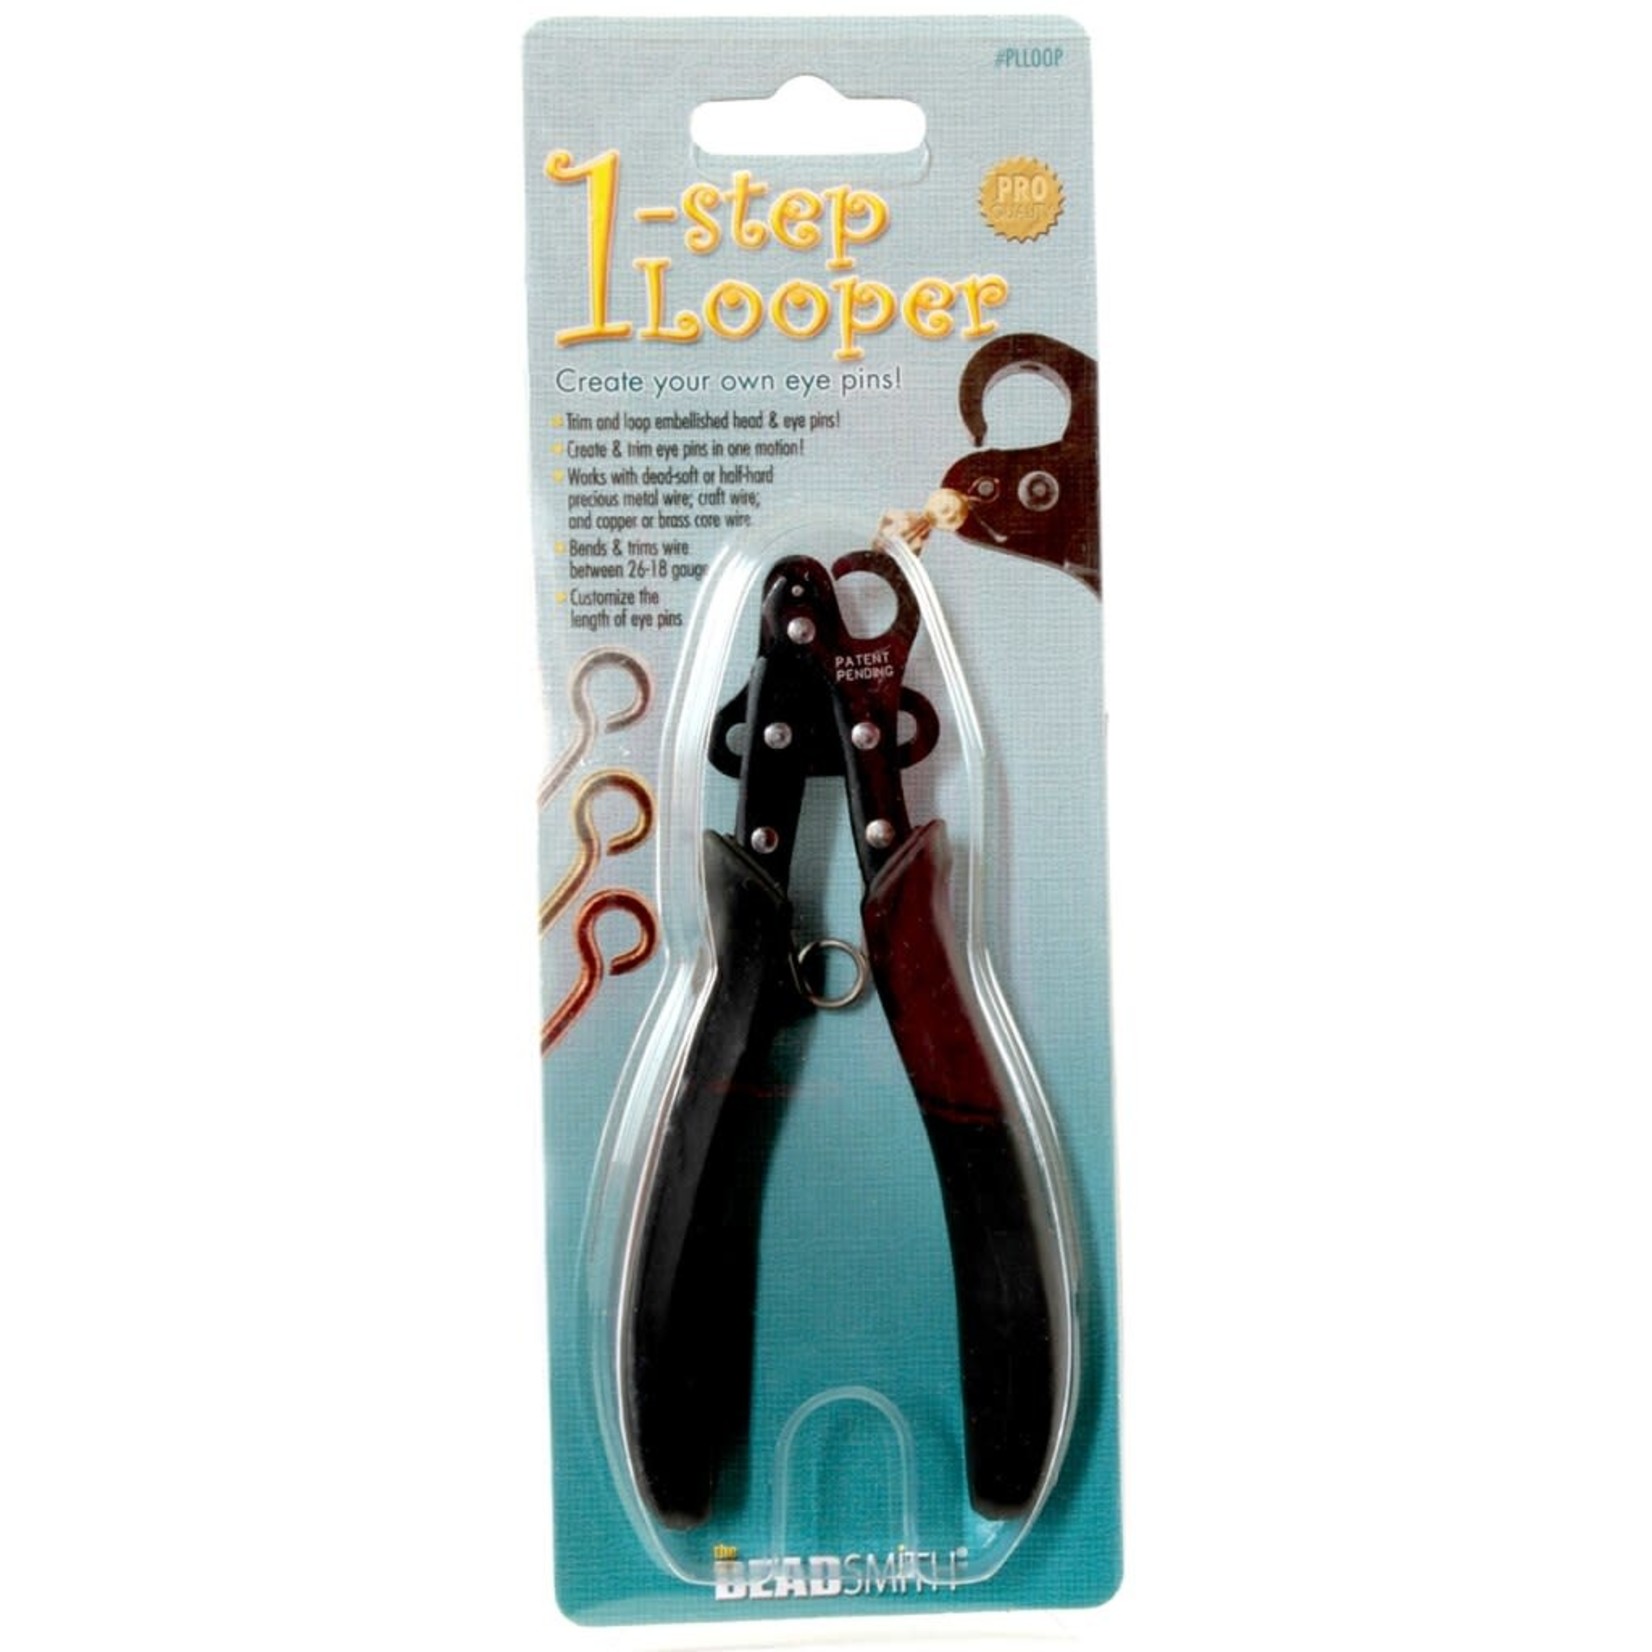 Beadsmith 1-step Looper - 1mm Loops